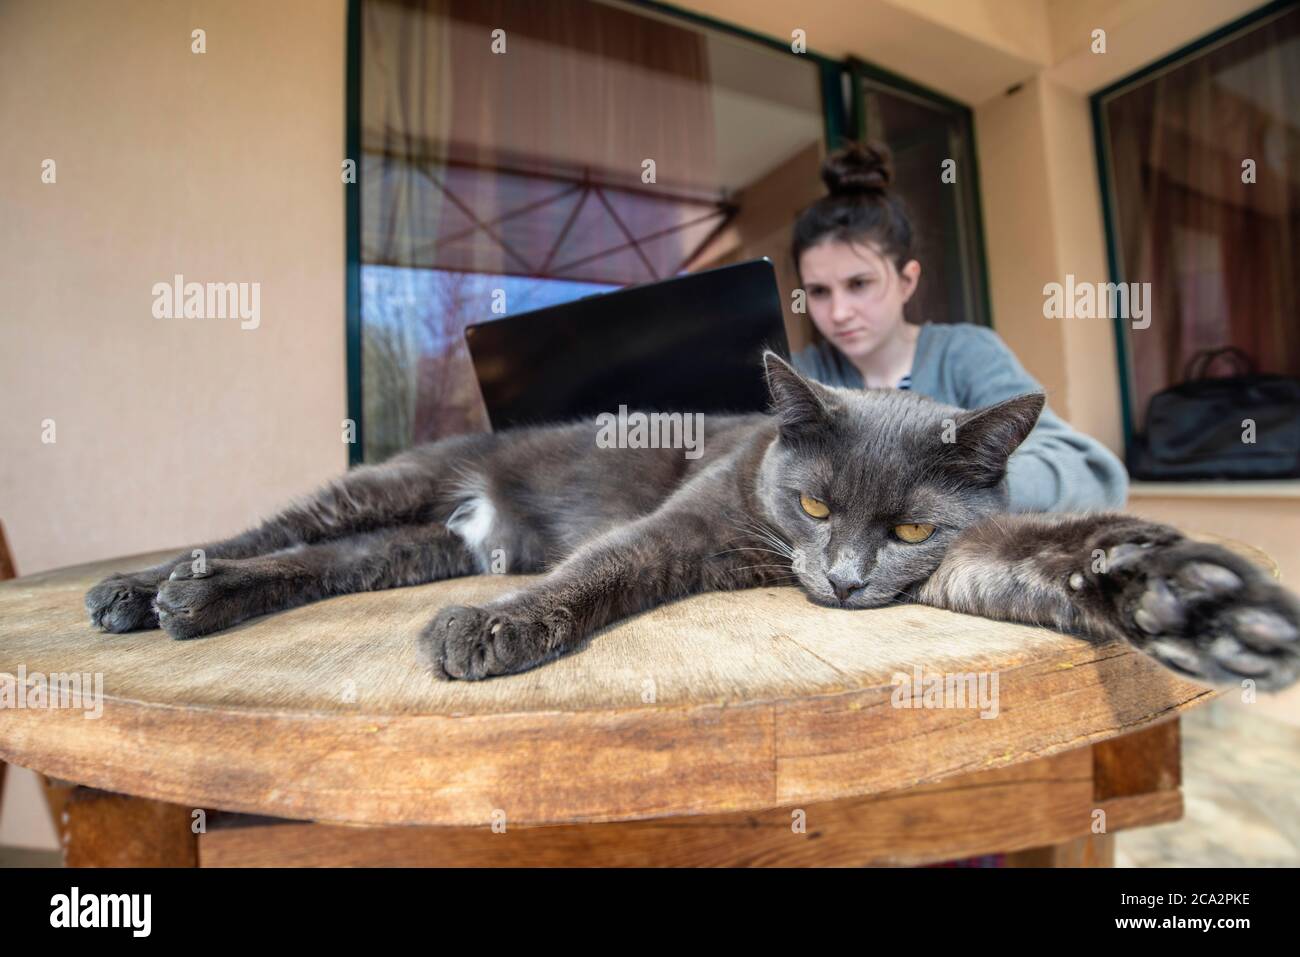 Ein Mädchen arbeitet auf einem Laptop, während die Katze ruht Stockfoto